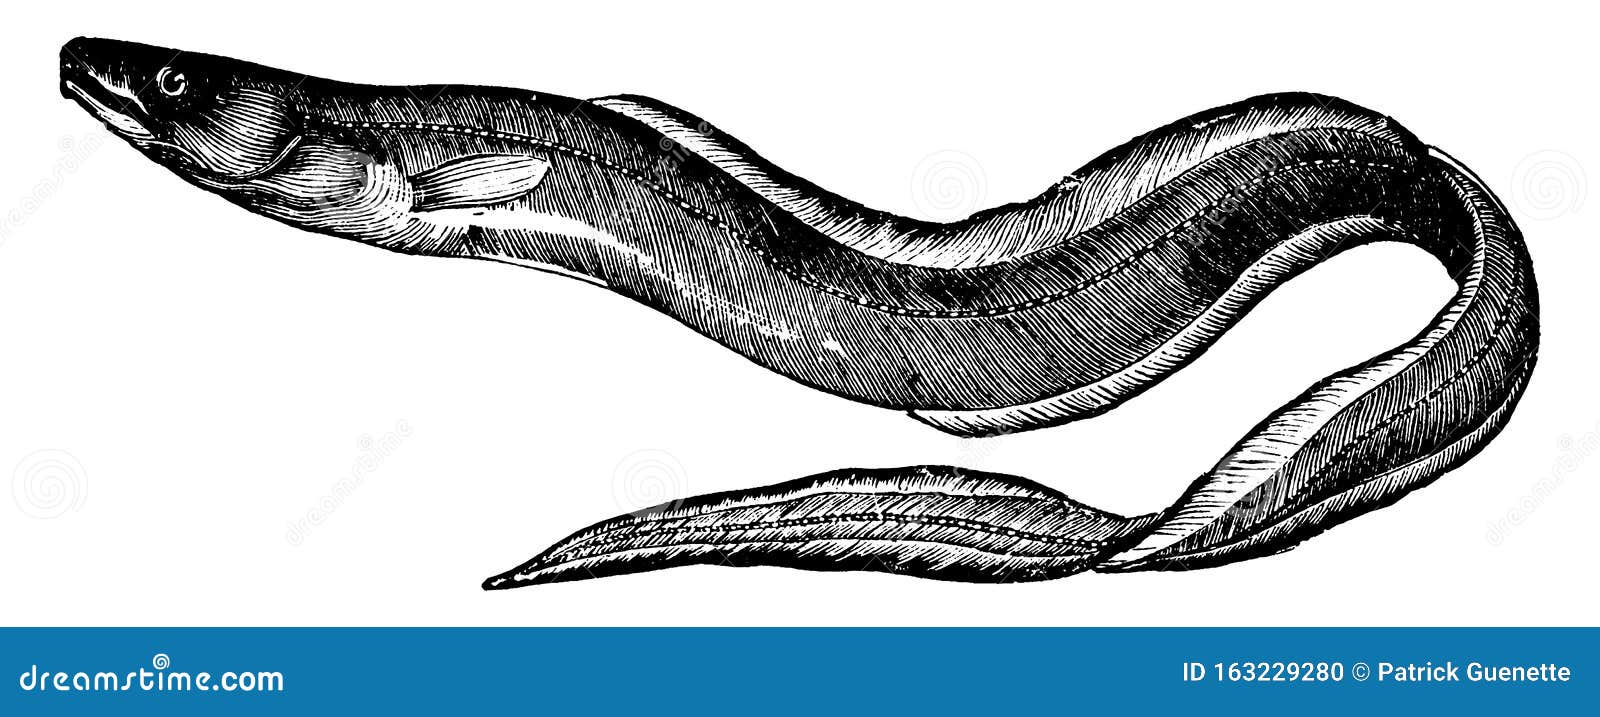 conger eel, vintage 